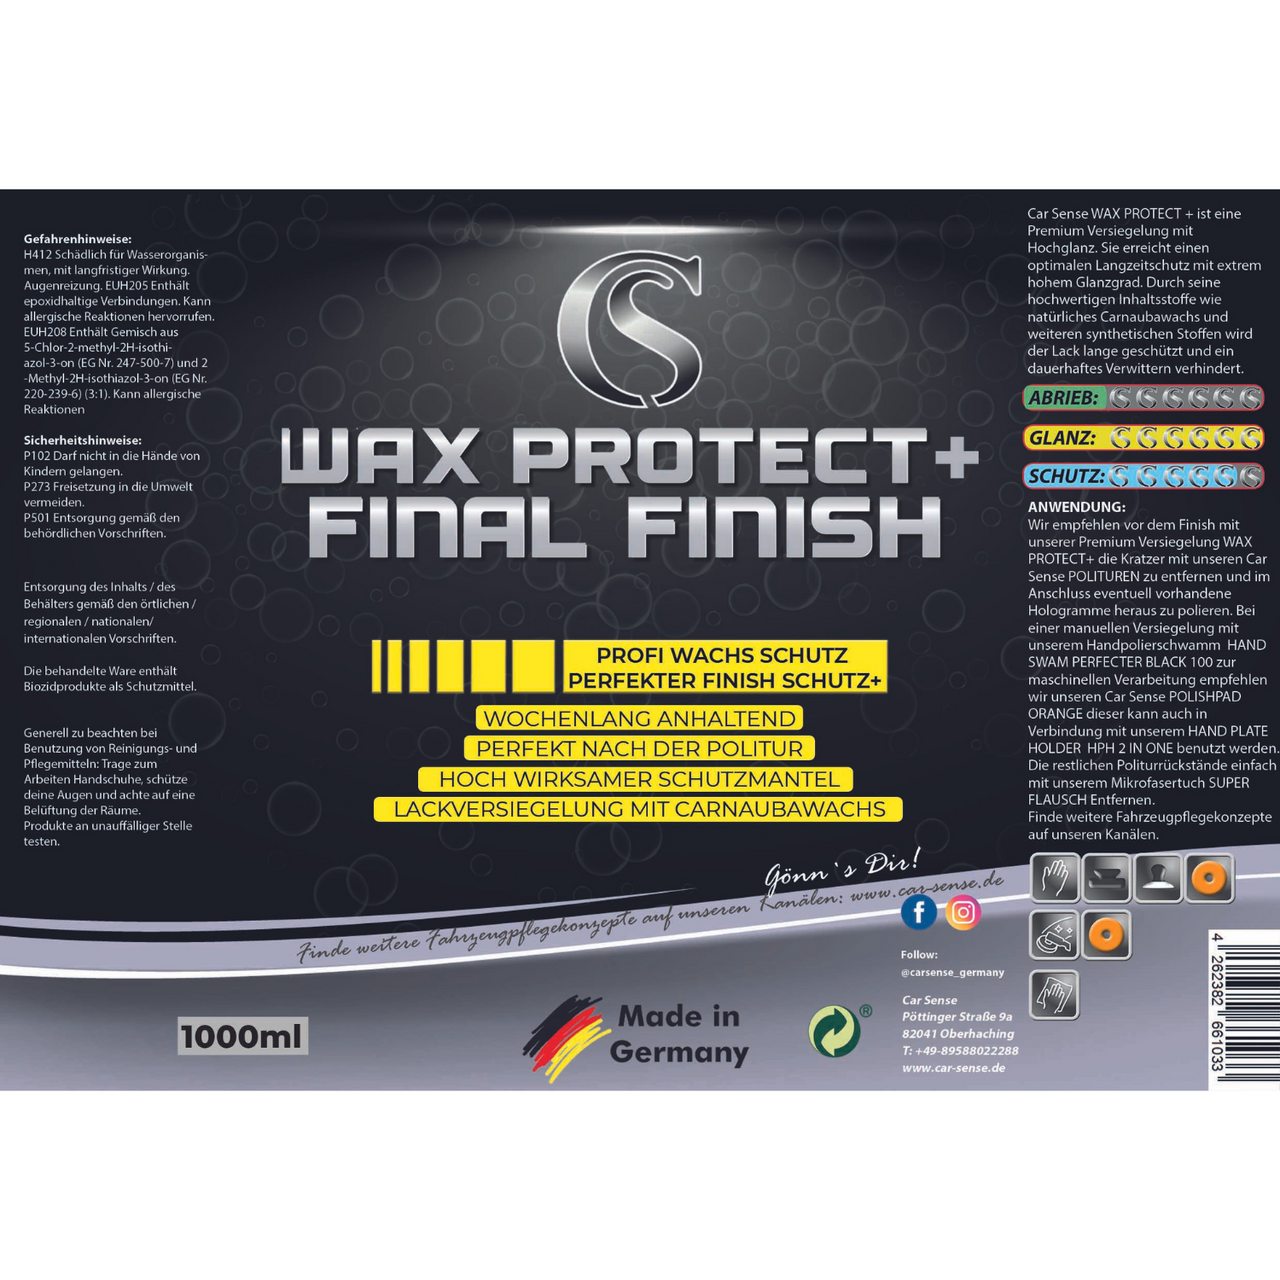 Car Sense Final Finish Wax Protect + Premium Versiegelung mit Hochglanz für Langzeitschutz und brillanten Glanzgrad